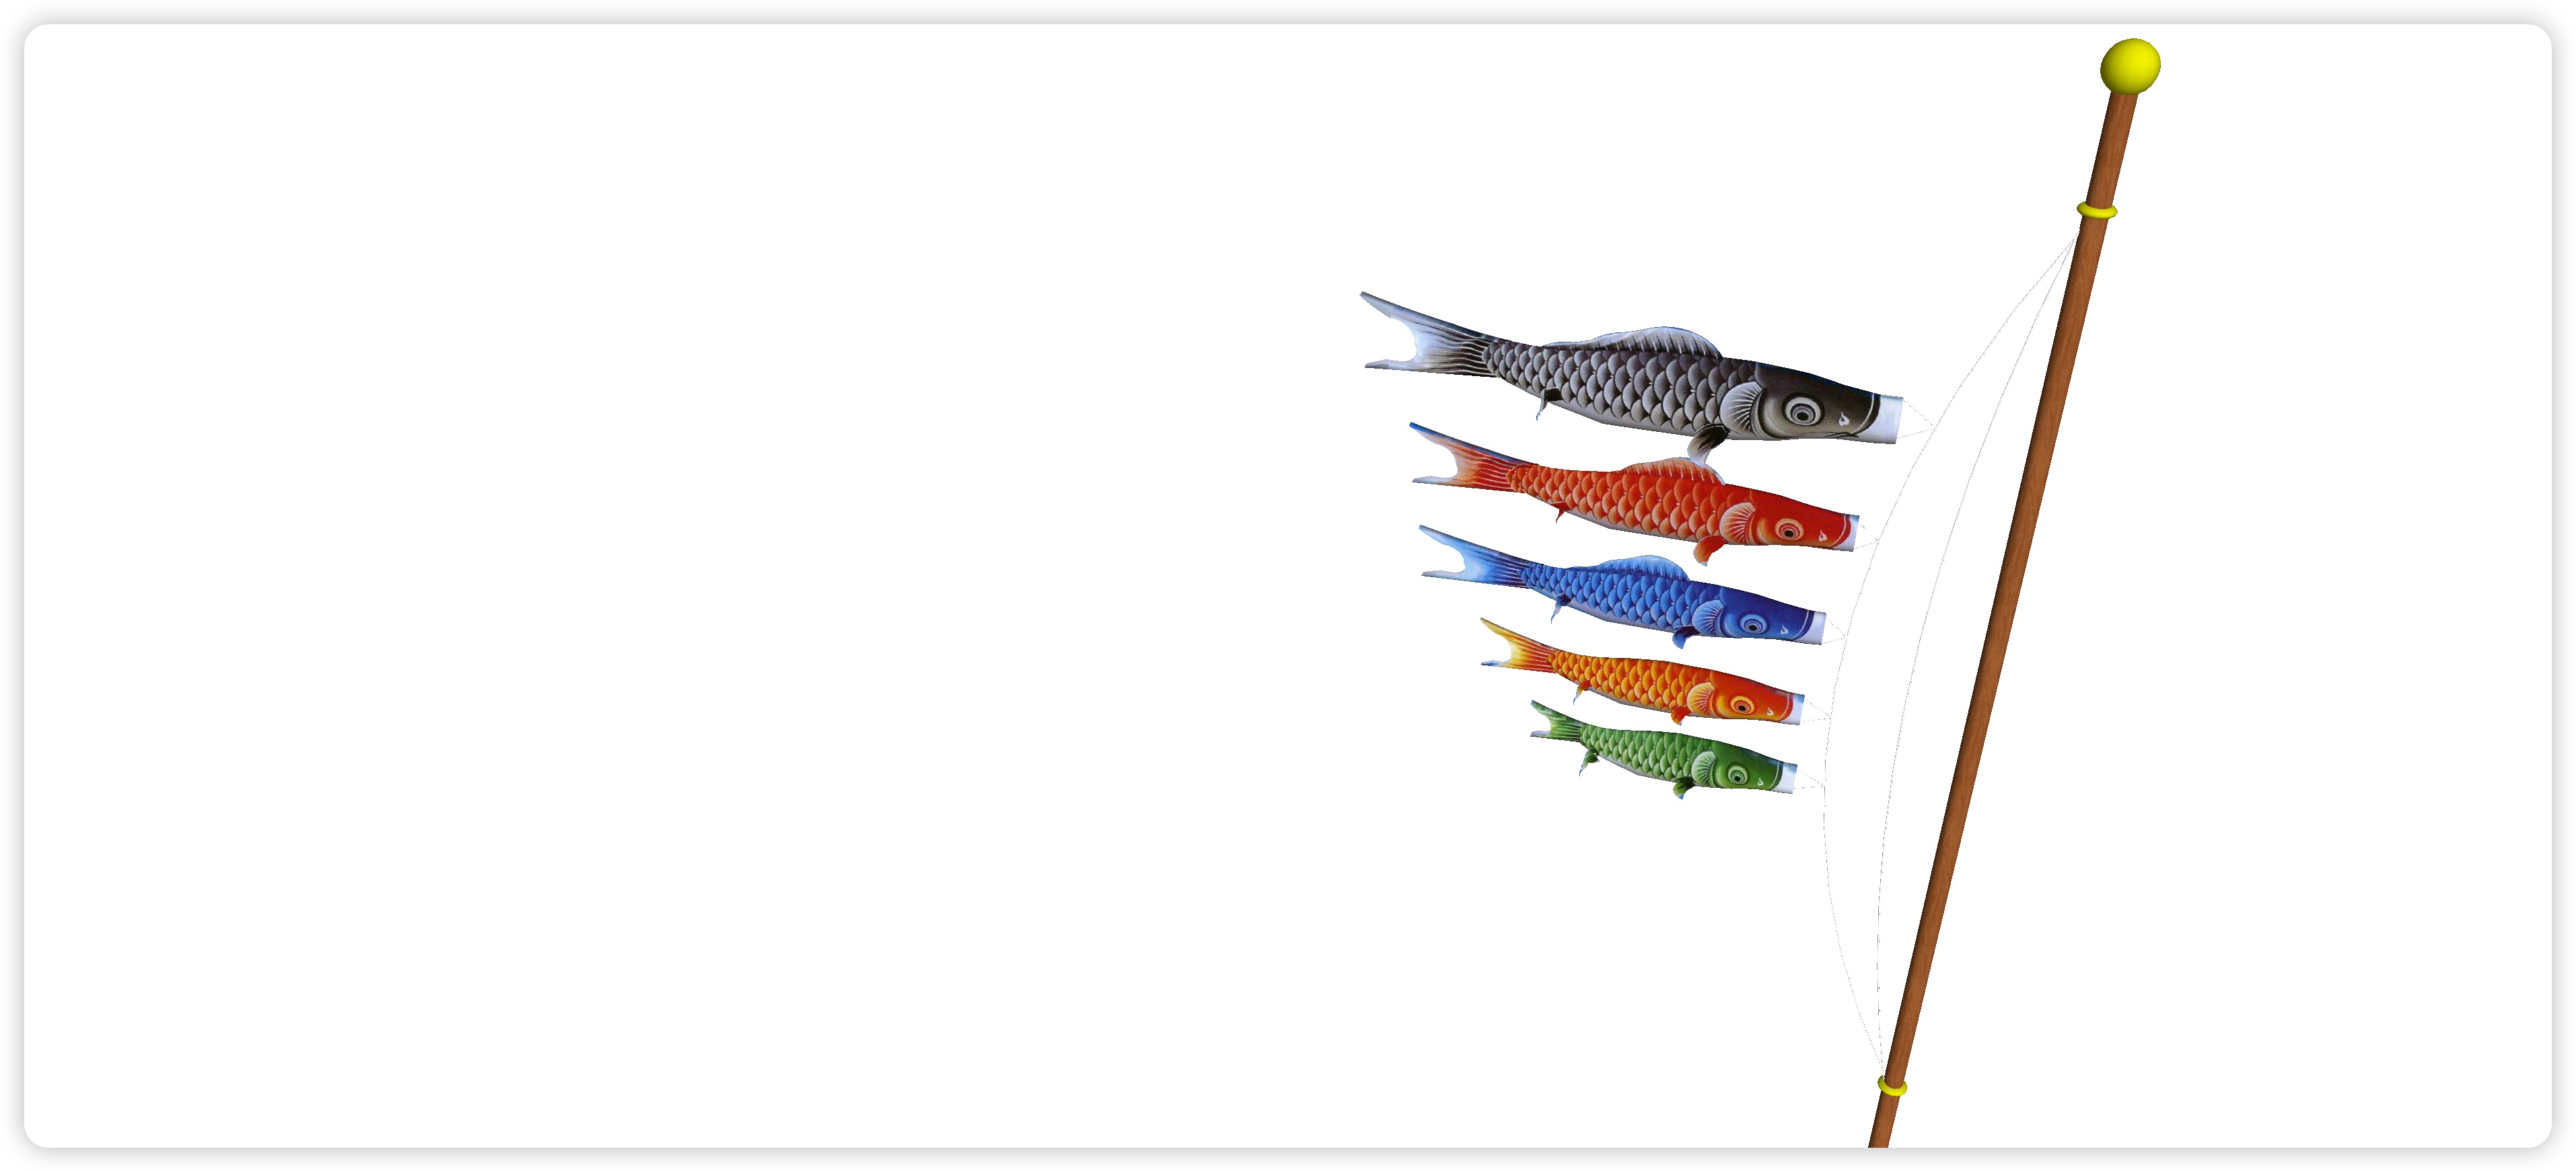 绥化观赏鱼市场锦鲤出现一个白点越来越大求助 - 红老虎鱼 - 广州观赏鱼批发市场